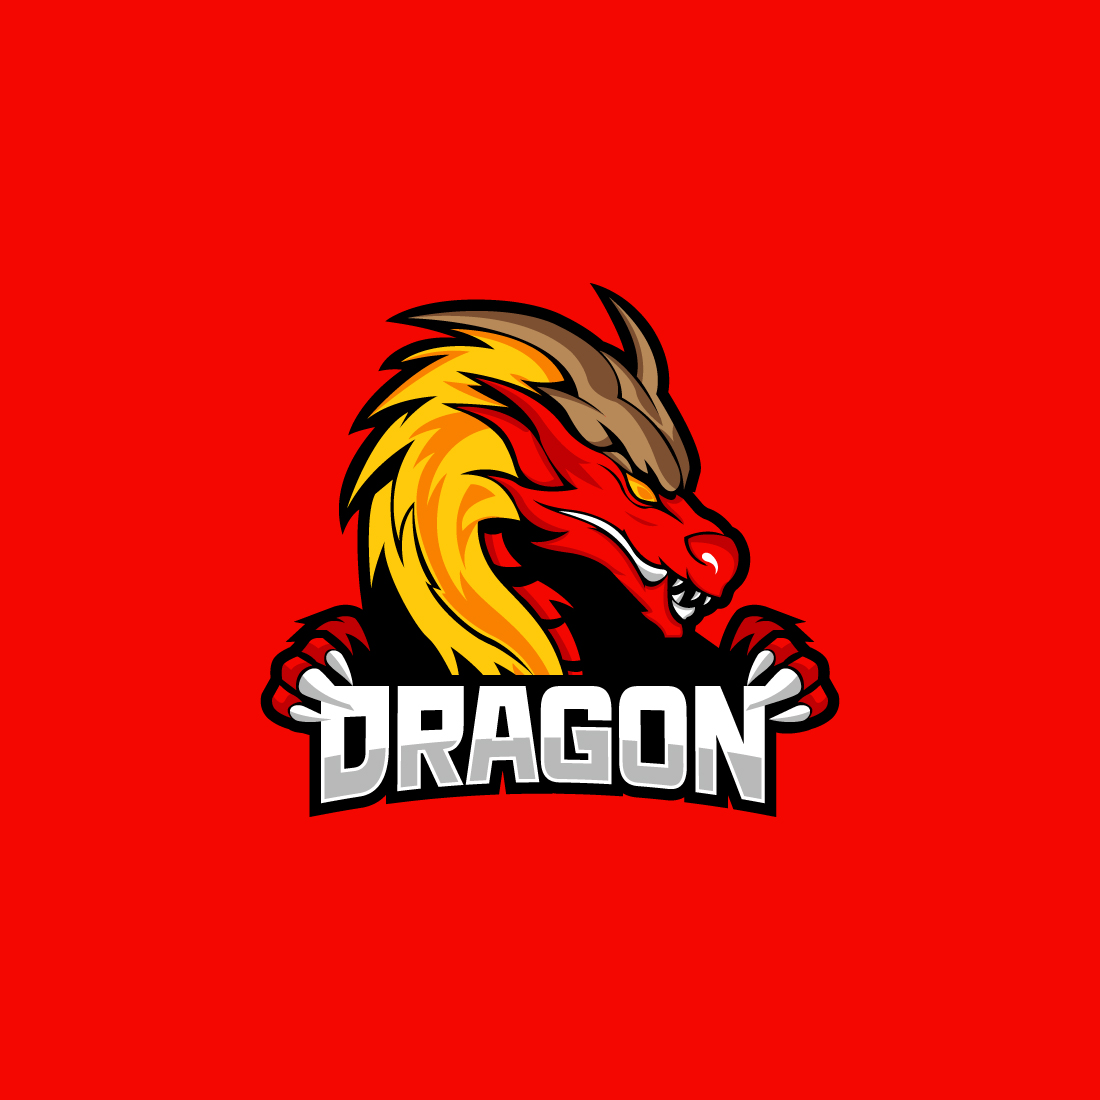 Dragon gaming mascot logo vector preview image.